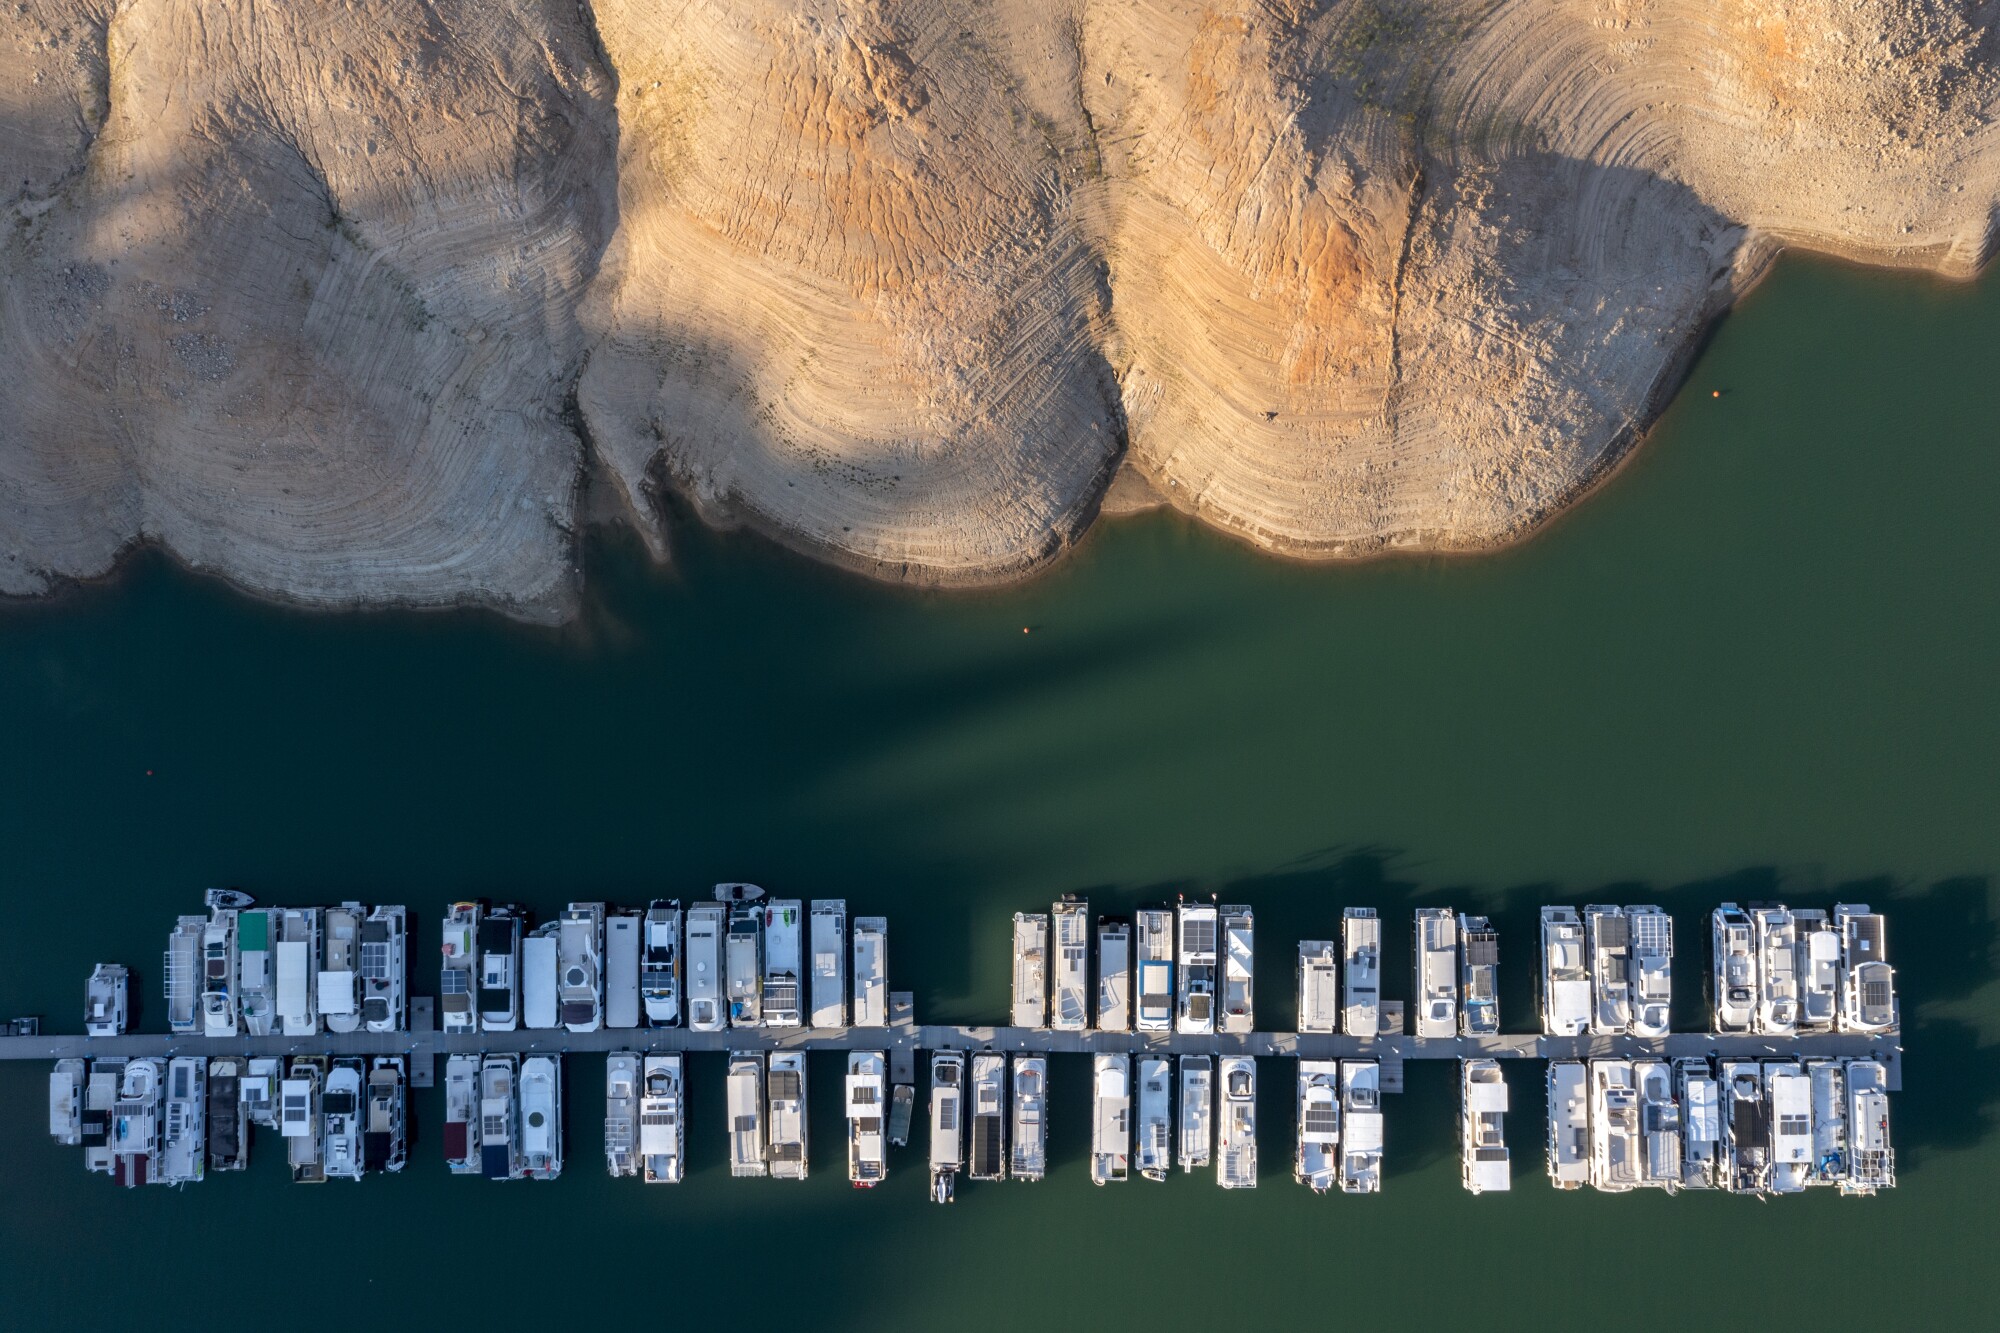 Boats are docked at a marina